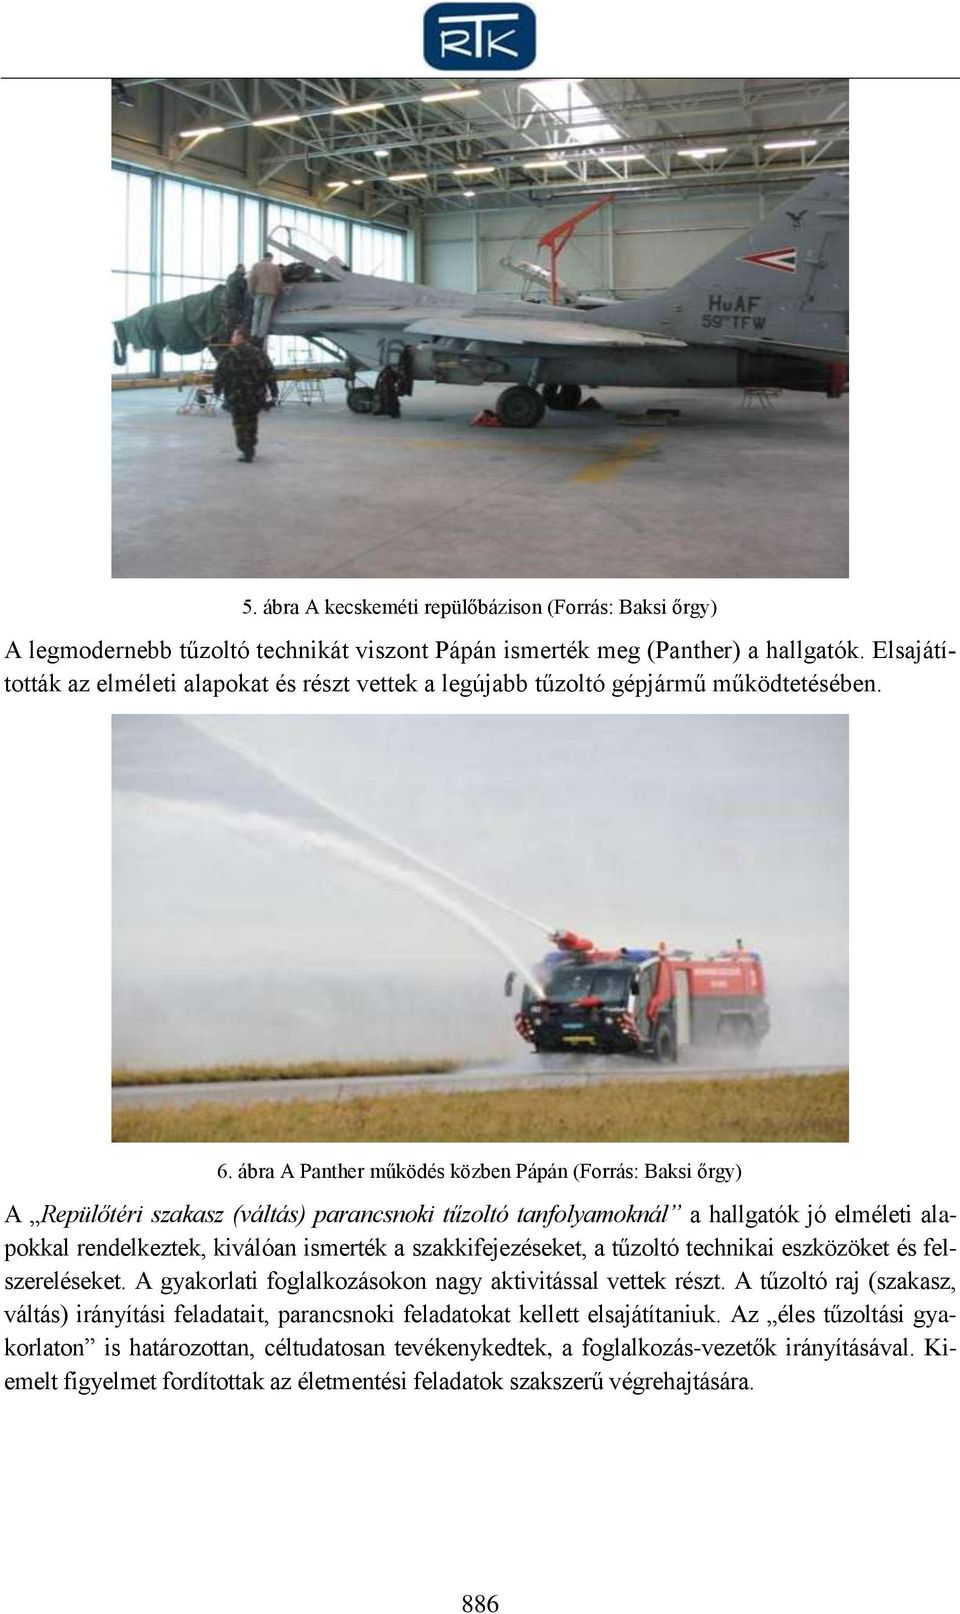 ábra A Panther működés közben Pápán (Forrás: Baksi őrgy) A Repülőtéri szakasz (váltás) parancsnoki tűzoltó tanfolyamoknál a hallgatók jó elméleti alapokkal rendelkeztek, kiválóan ismerték a